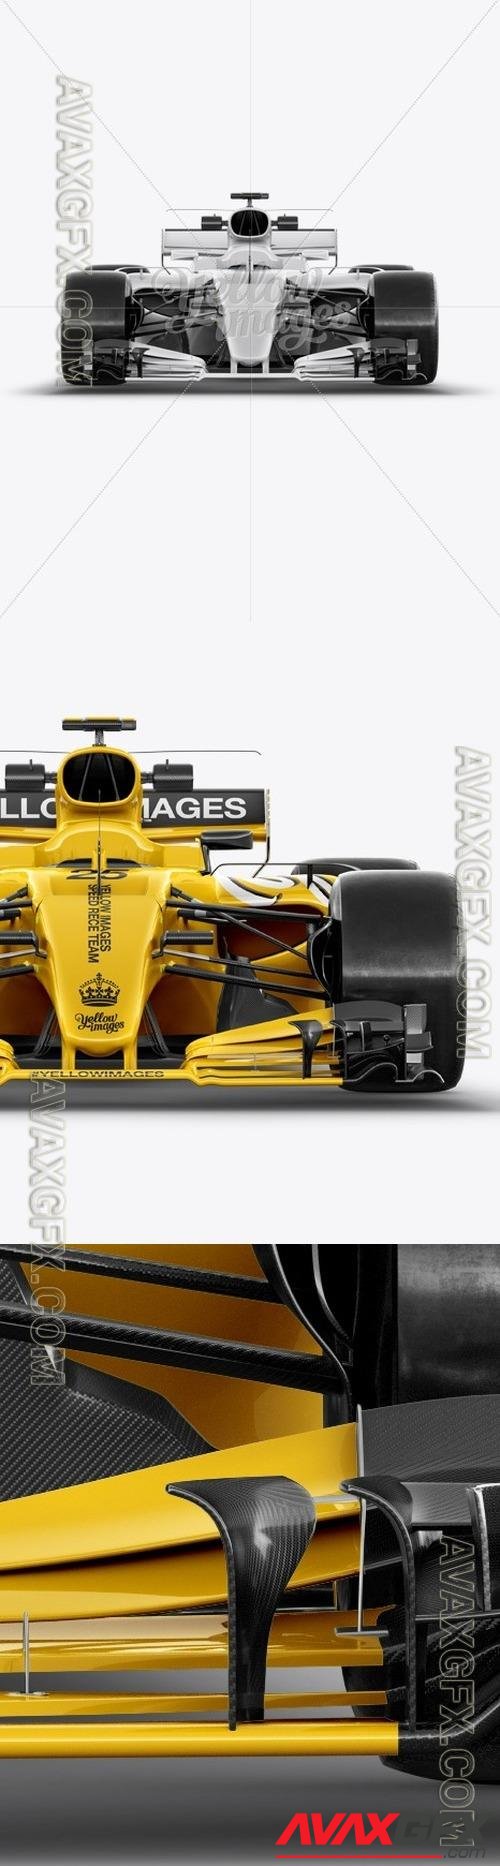 2017 Formula 1 Car Front view Mockup 18015